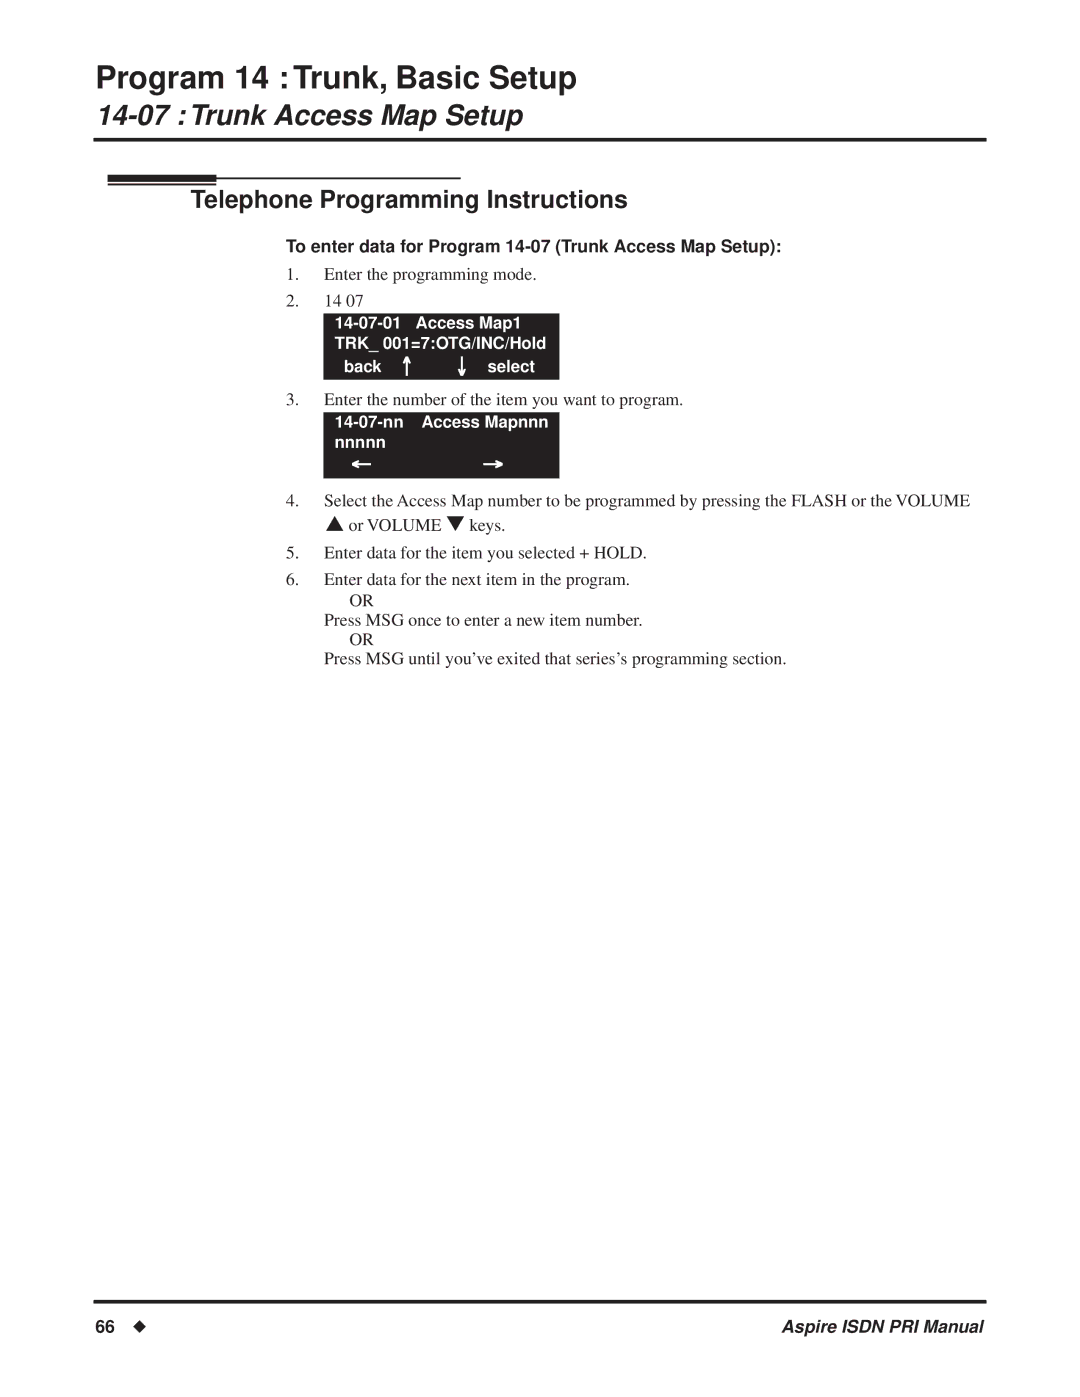 NEC ISDN-PRI manual To enter data for Program 14-07 Trunk Access Map Setup, Nn Access Mapnnn nnnnn 